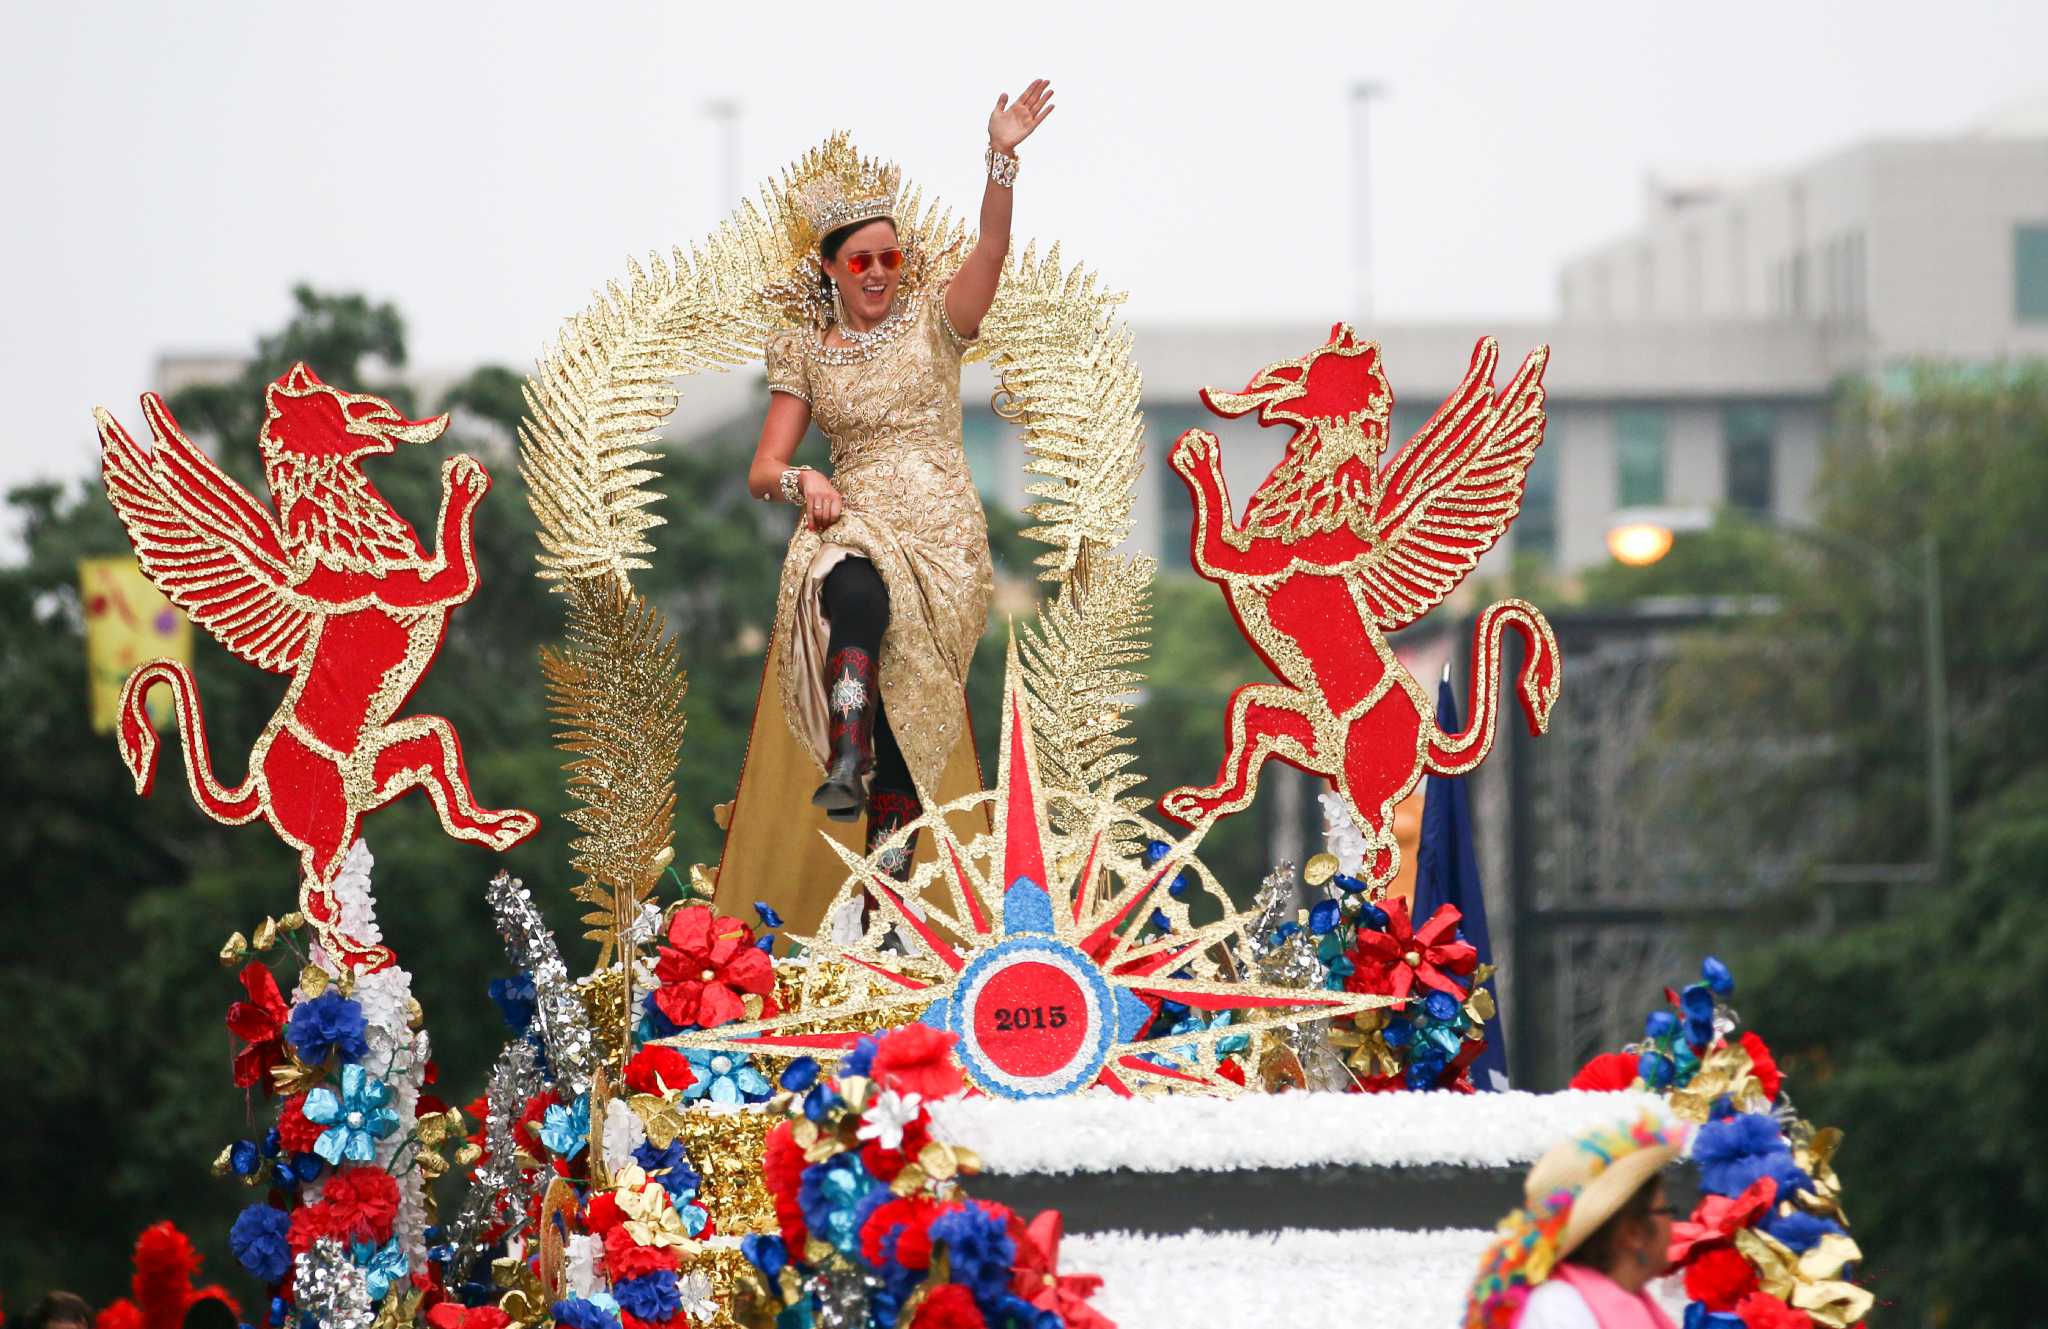 5 mustattend Fiesta parades